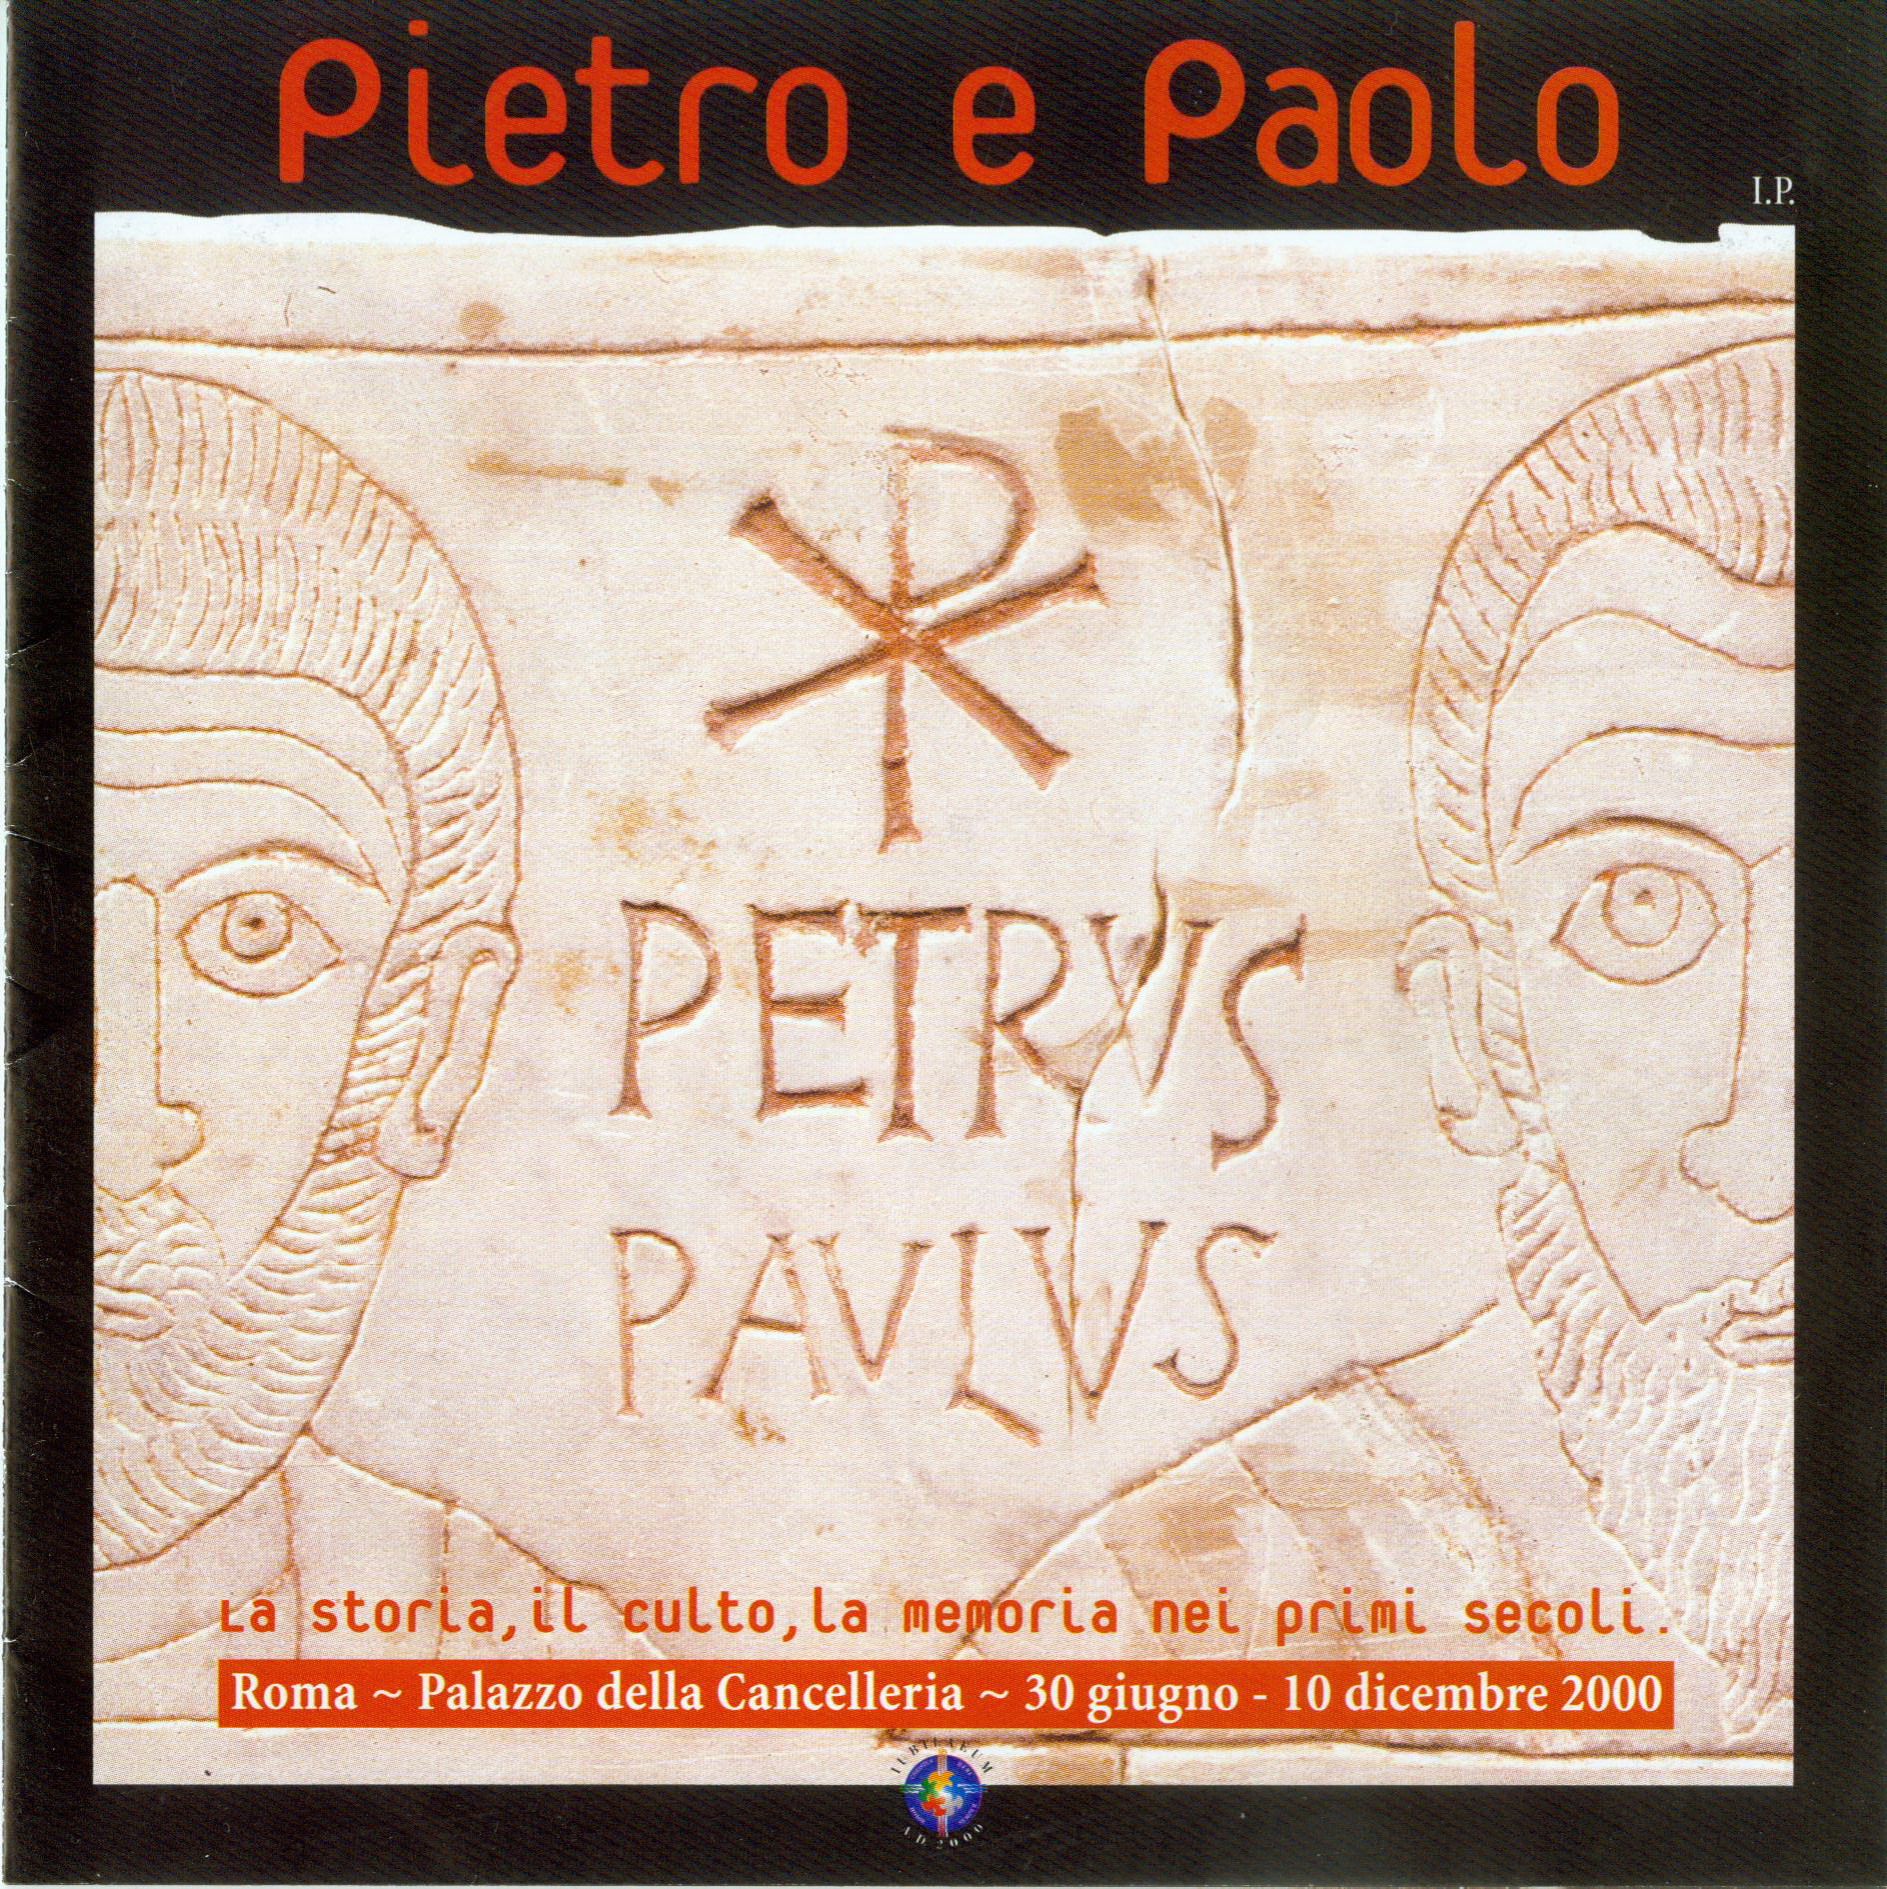 Pietro e Paolo. La storia, il culto, la memoria nei primi secoli (Peter and Paul. The history, the worship, the memory in the first centuries)